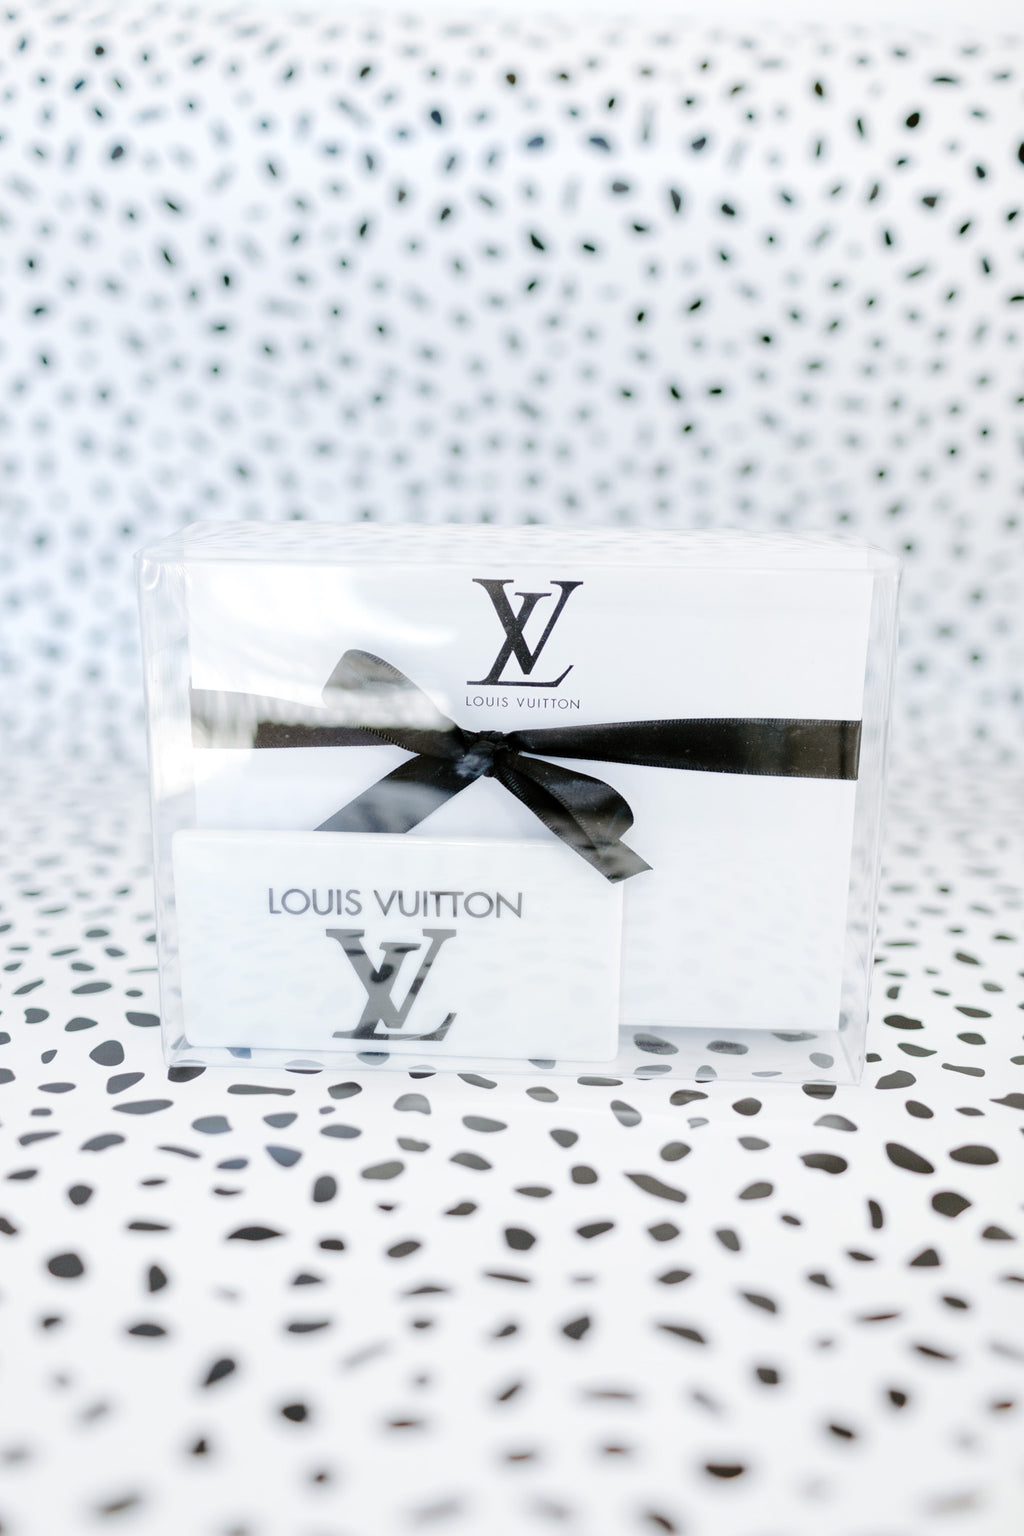 Louis Vuitton Party Favors